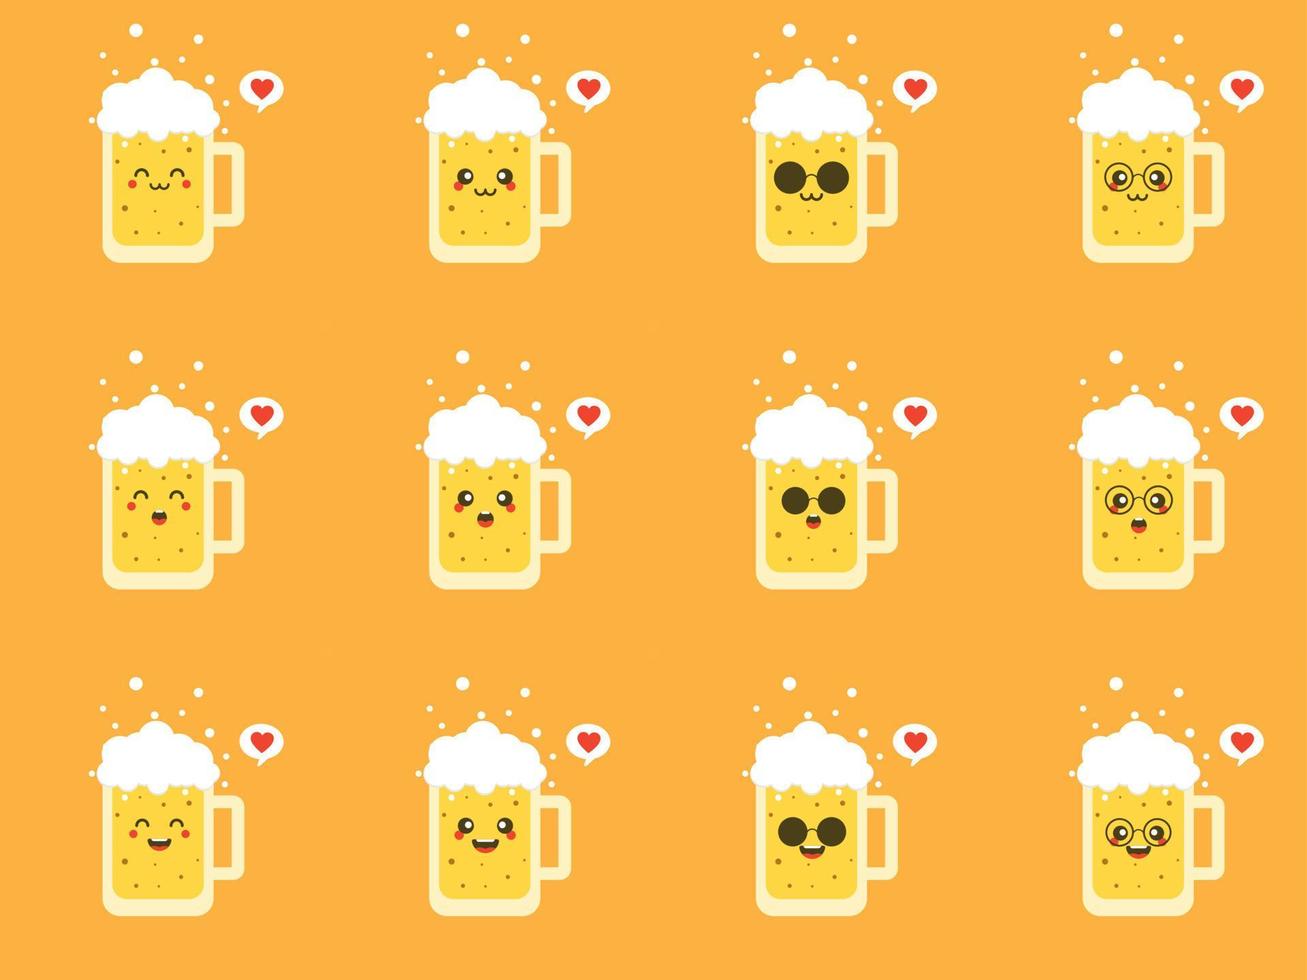 illustration vectorielle de conception plate de bière mignonne et kawaii. personnage de verre à bière drôle avec emoji humain souriant, illustration de vecteur de dessin animé isolé sur fond de couleur. mascottes mignonnes et rigolotes